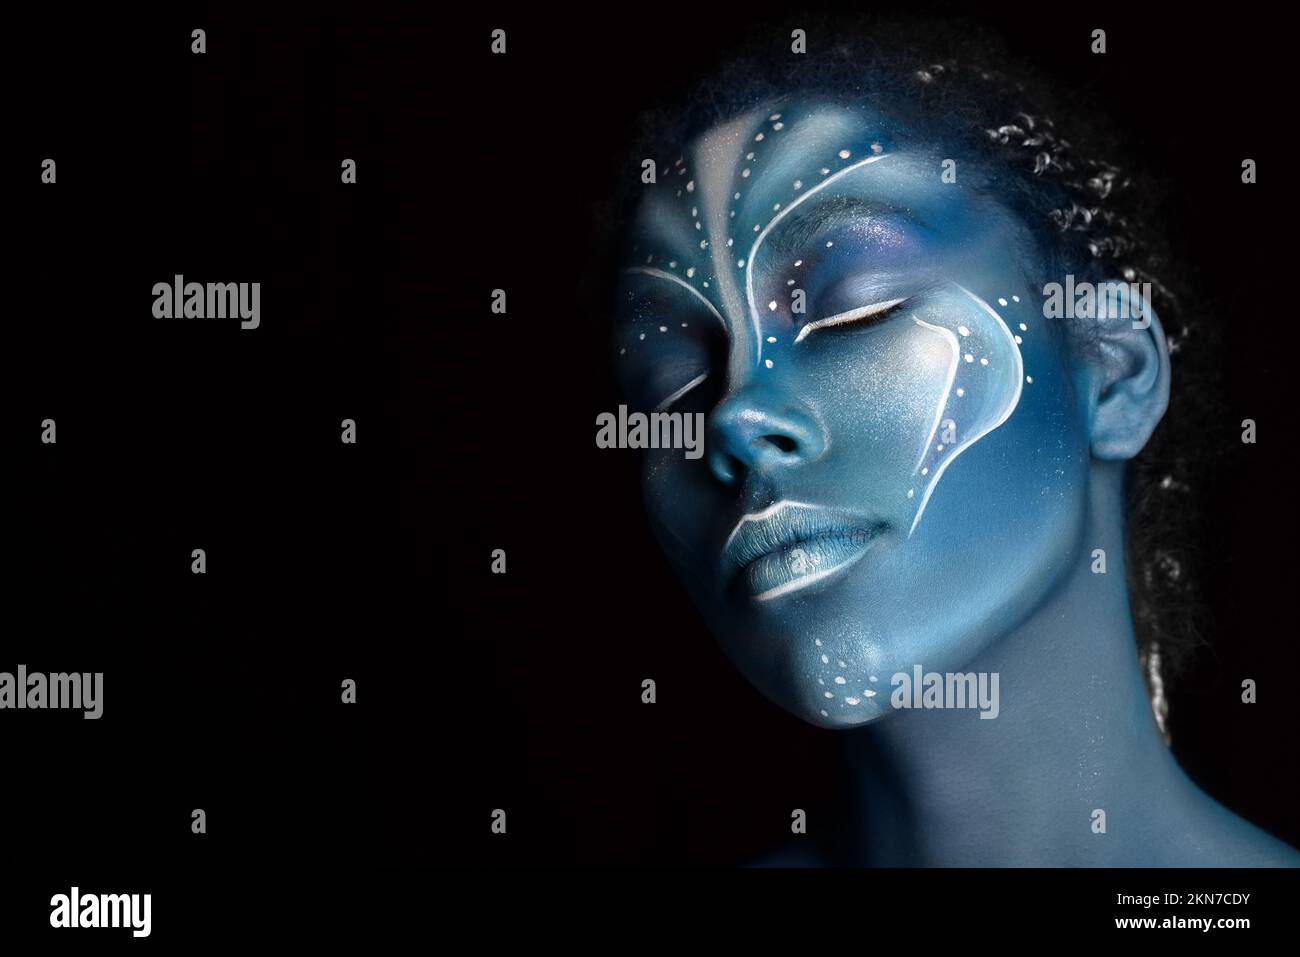 Portrait de belle fille africaine avec peintures tribal bleu ressemblant à Na'vi dans Avatar tribu film. Concept extraterrestre Banque D'Images